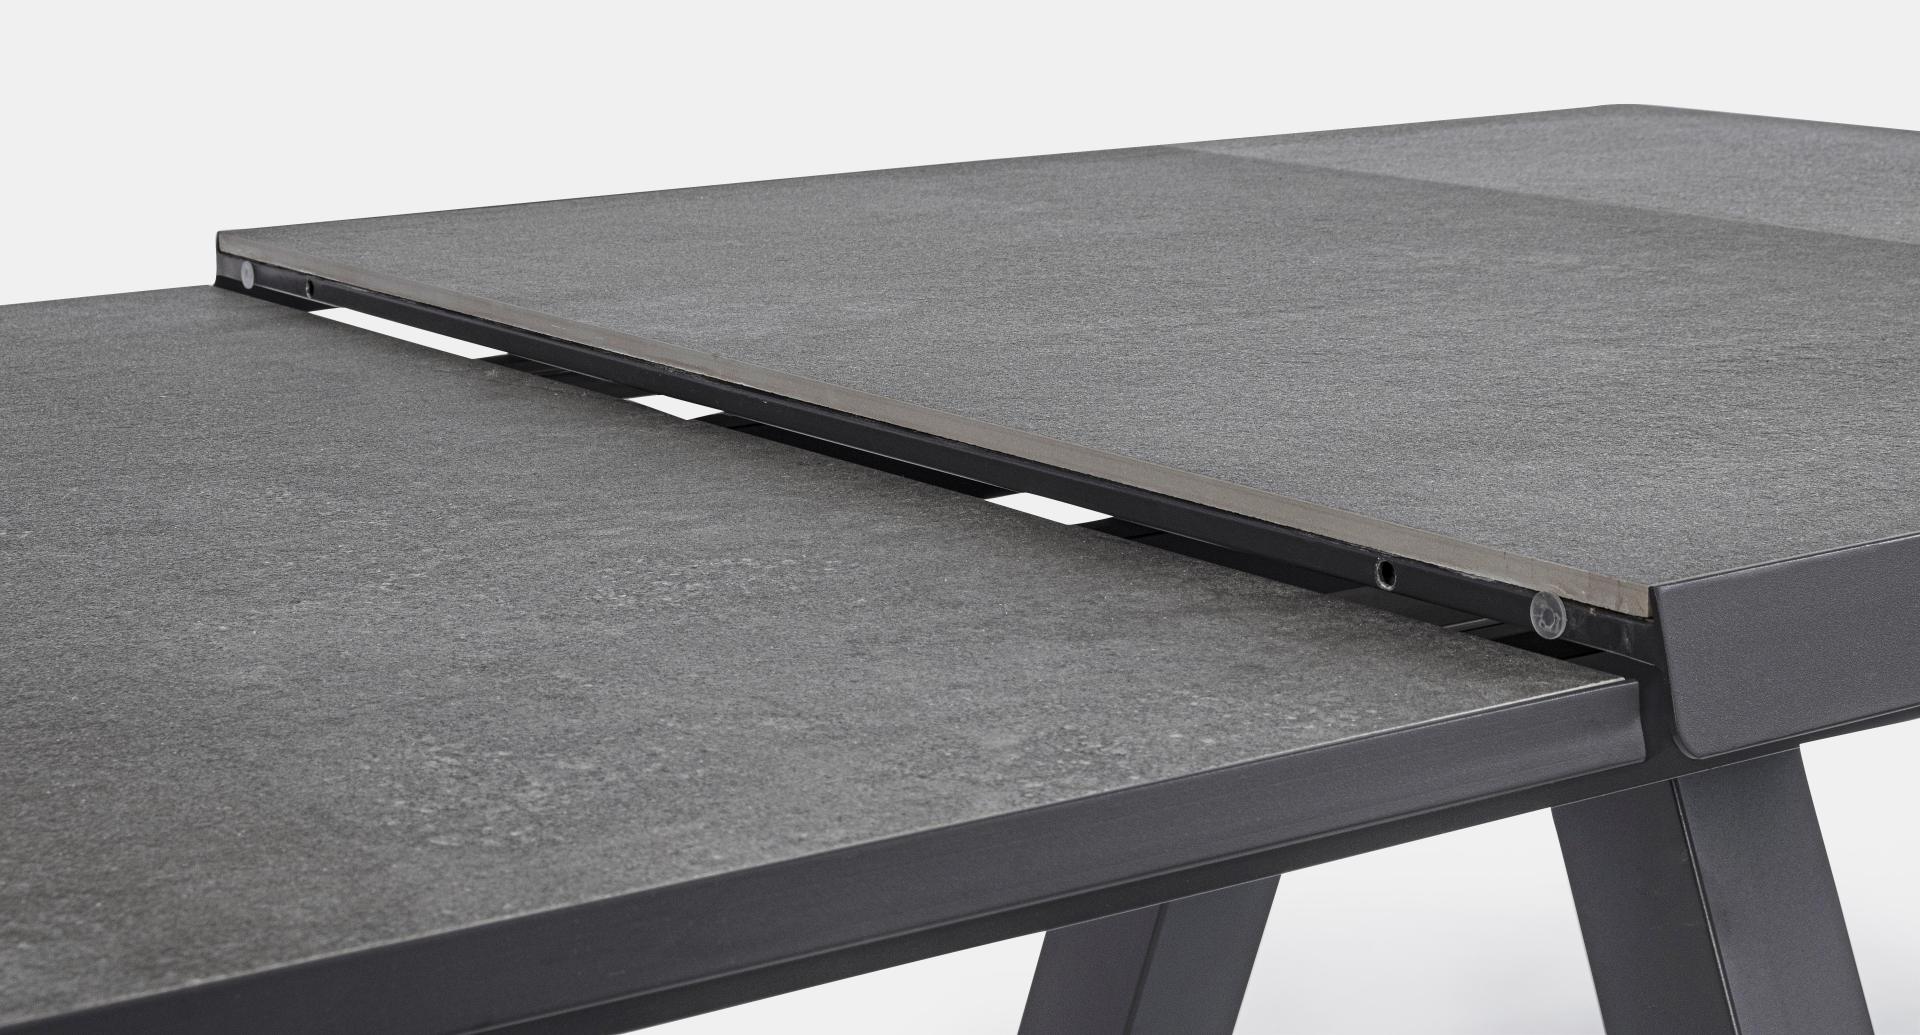 Outdoor Tisch | ausziehbar 205-265 cm KRION